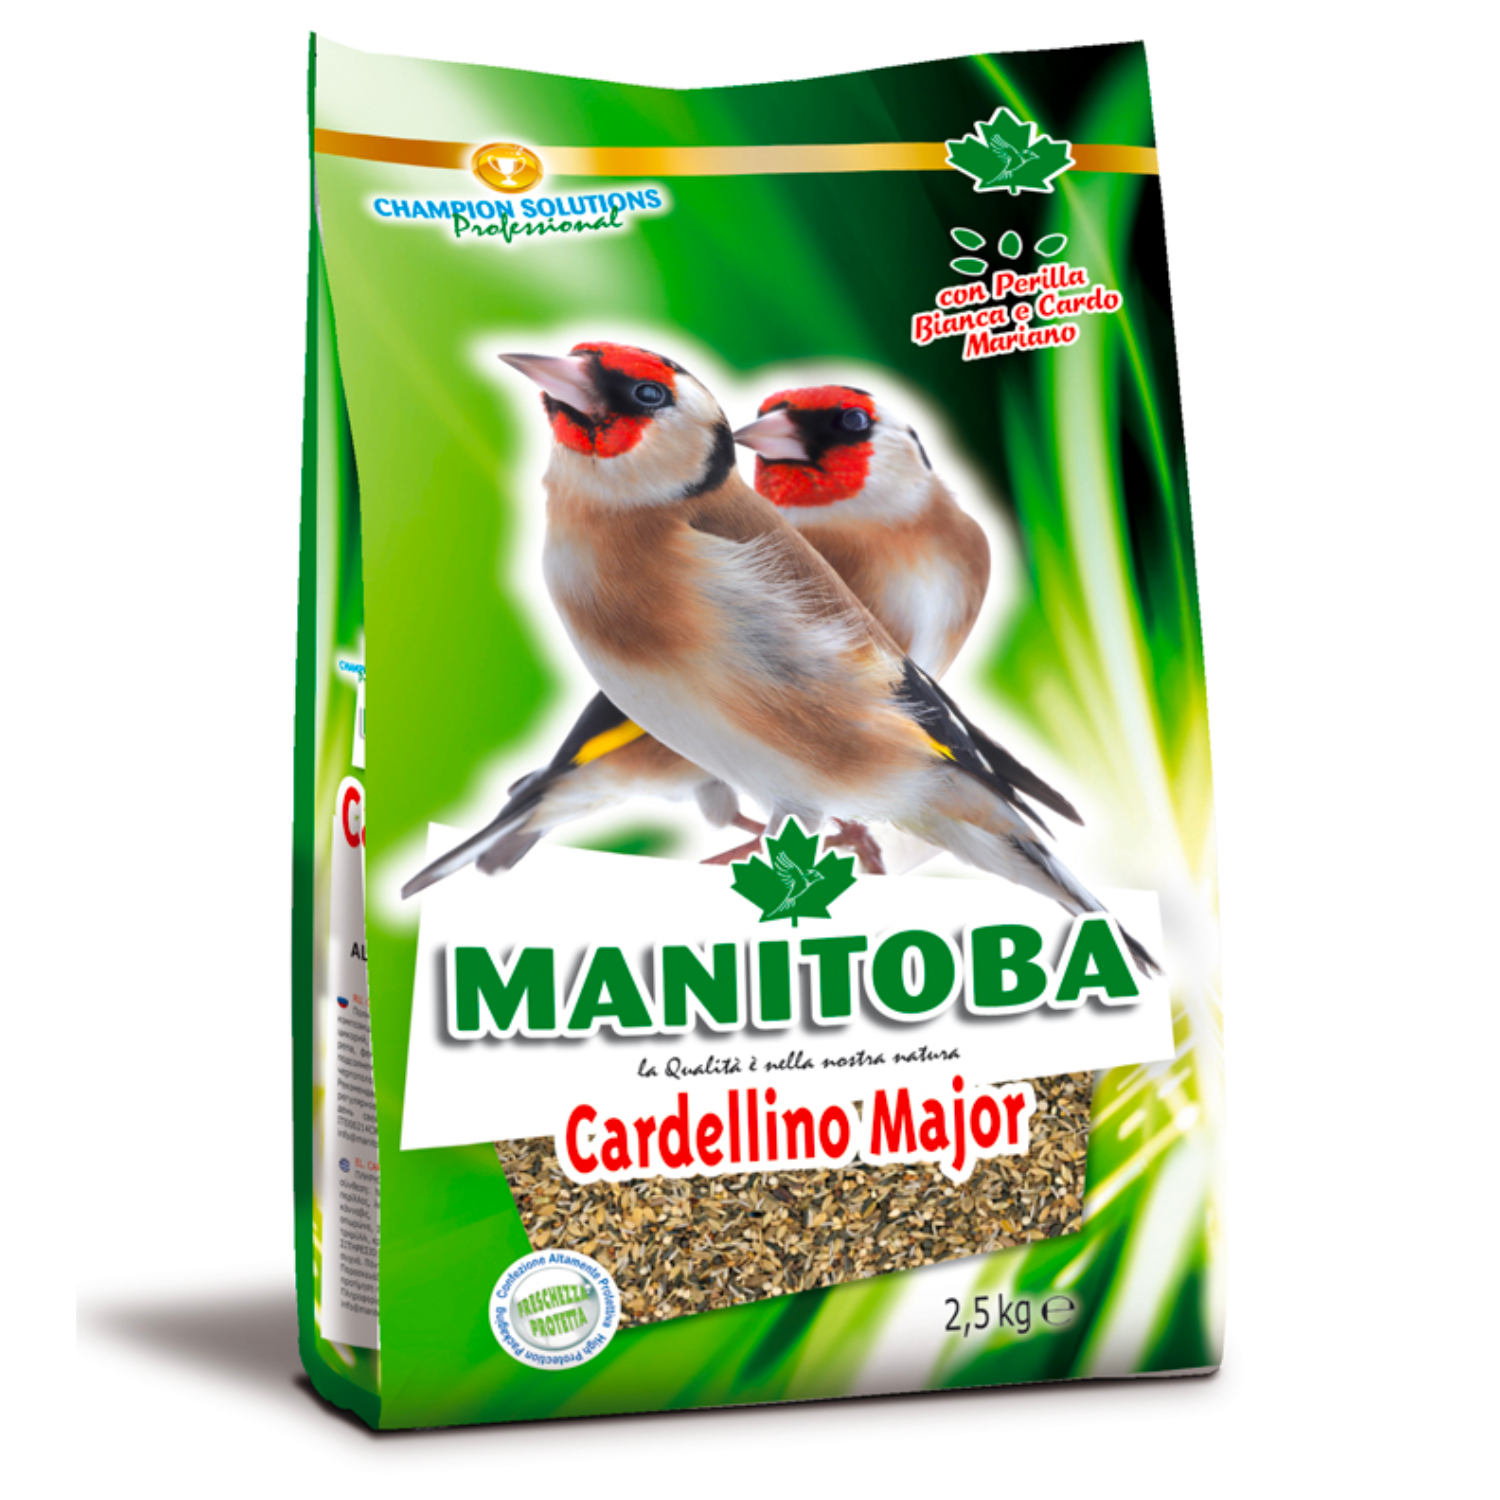 Manitoba Cardellino Major 2,5 kg